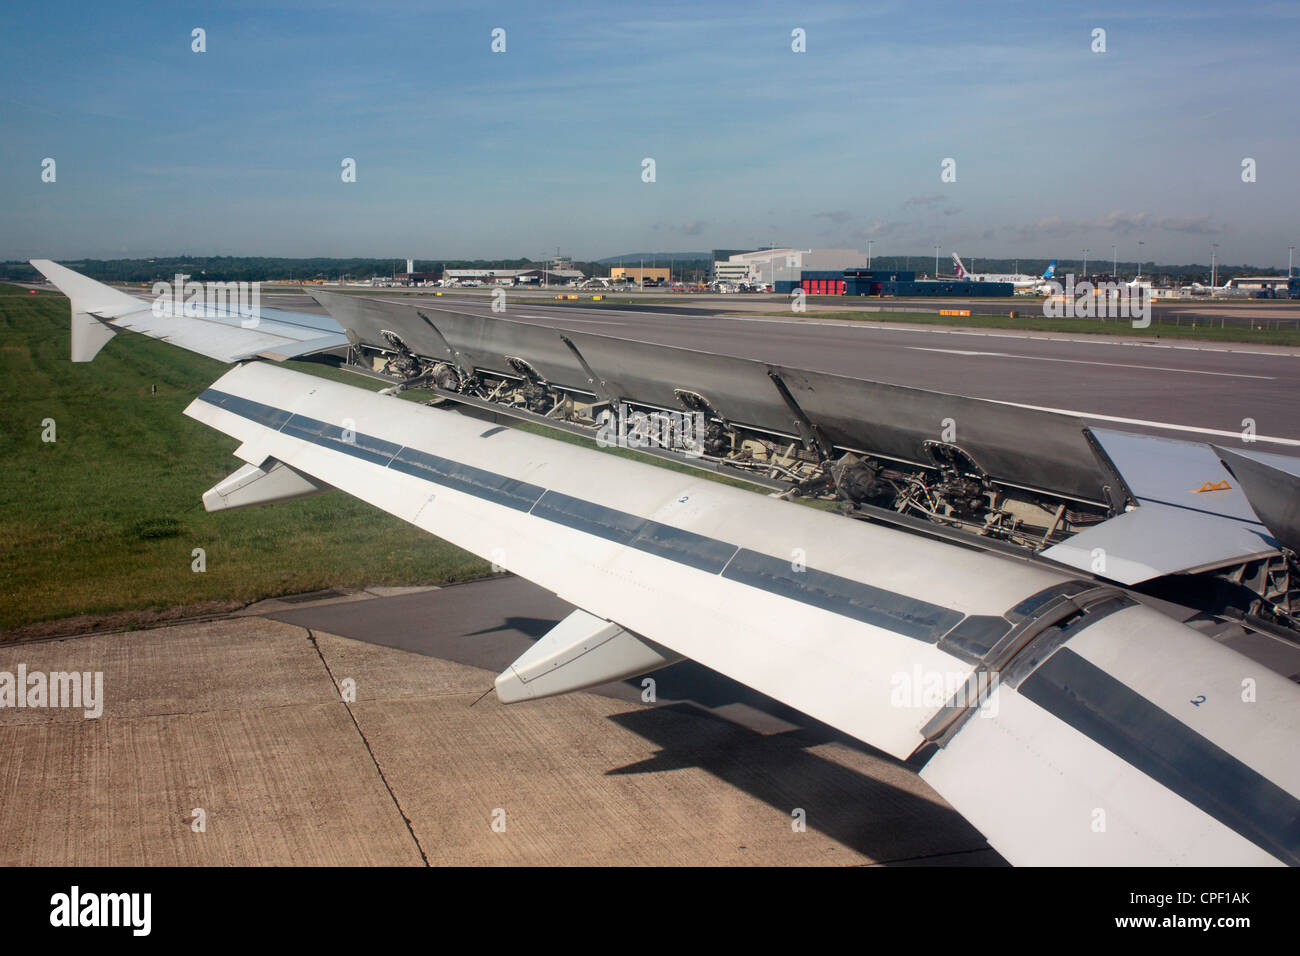 Ala di un Airbus A320 jet dopo le operazioni di sbarco con spoiler e lembi verso il basso ad alta resistenza. Aerodinamica e la progettazione degli aeromobili Foto Stock